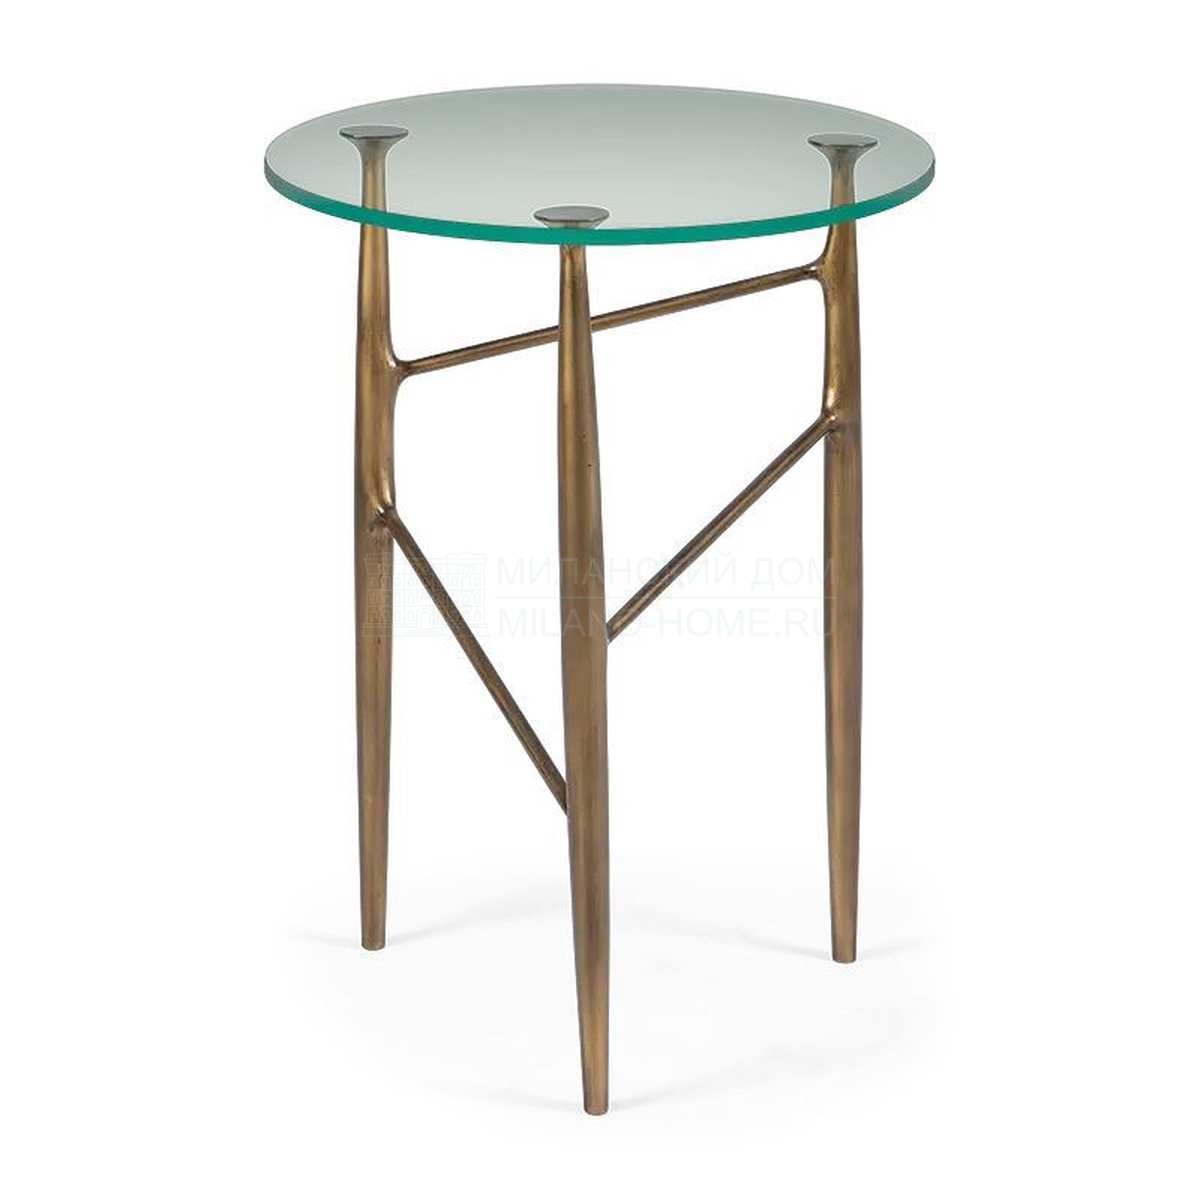 Кофейный столик Lars side table  из США фабрики CHRISTOPHER GUY